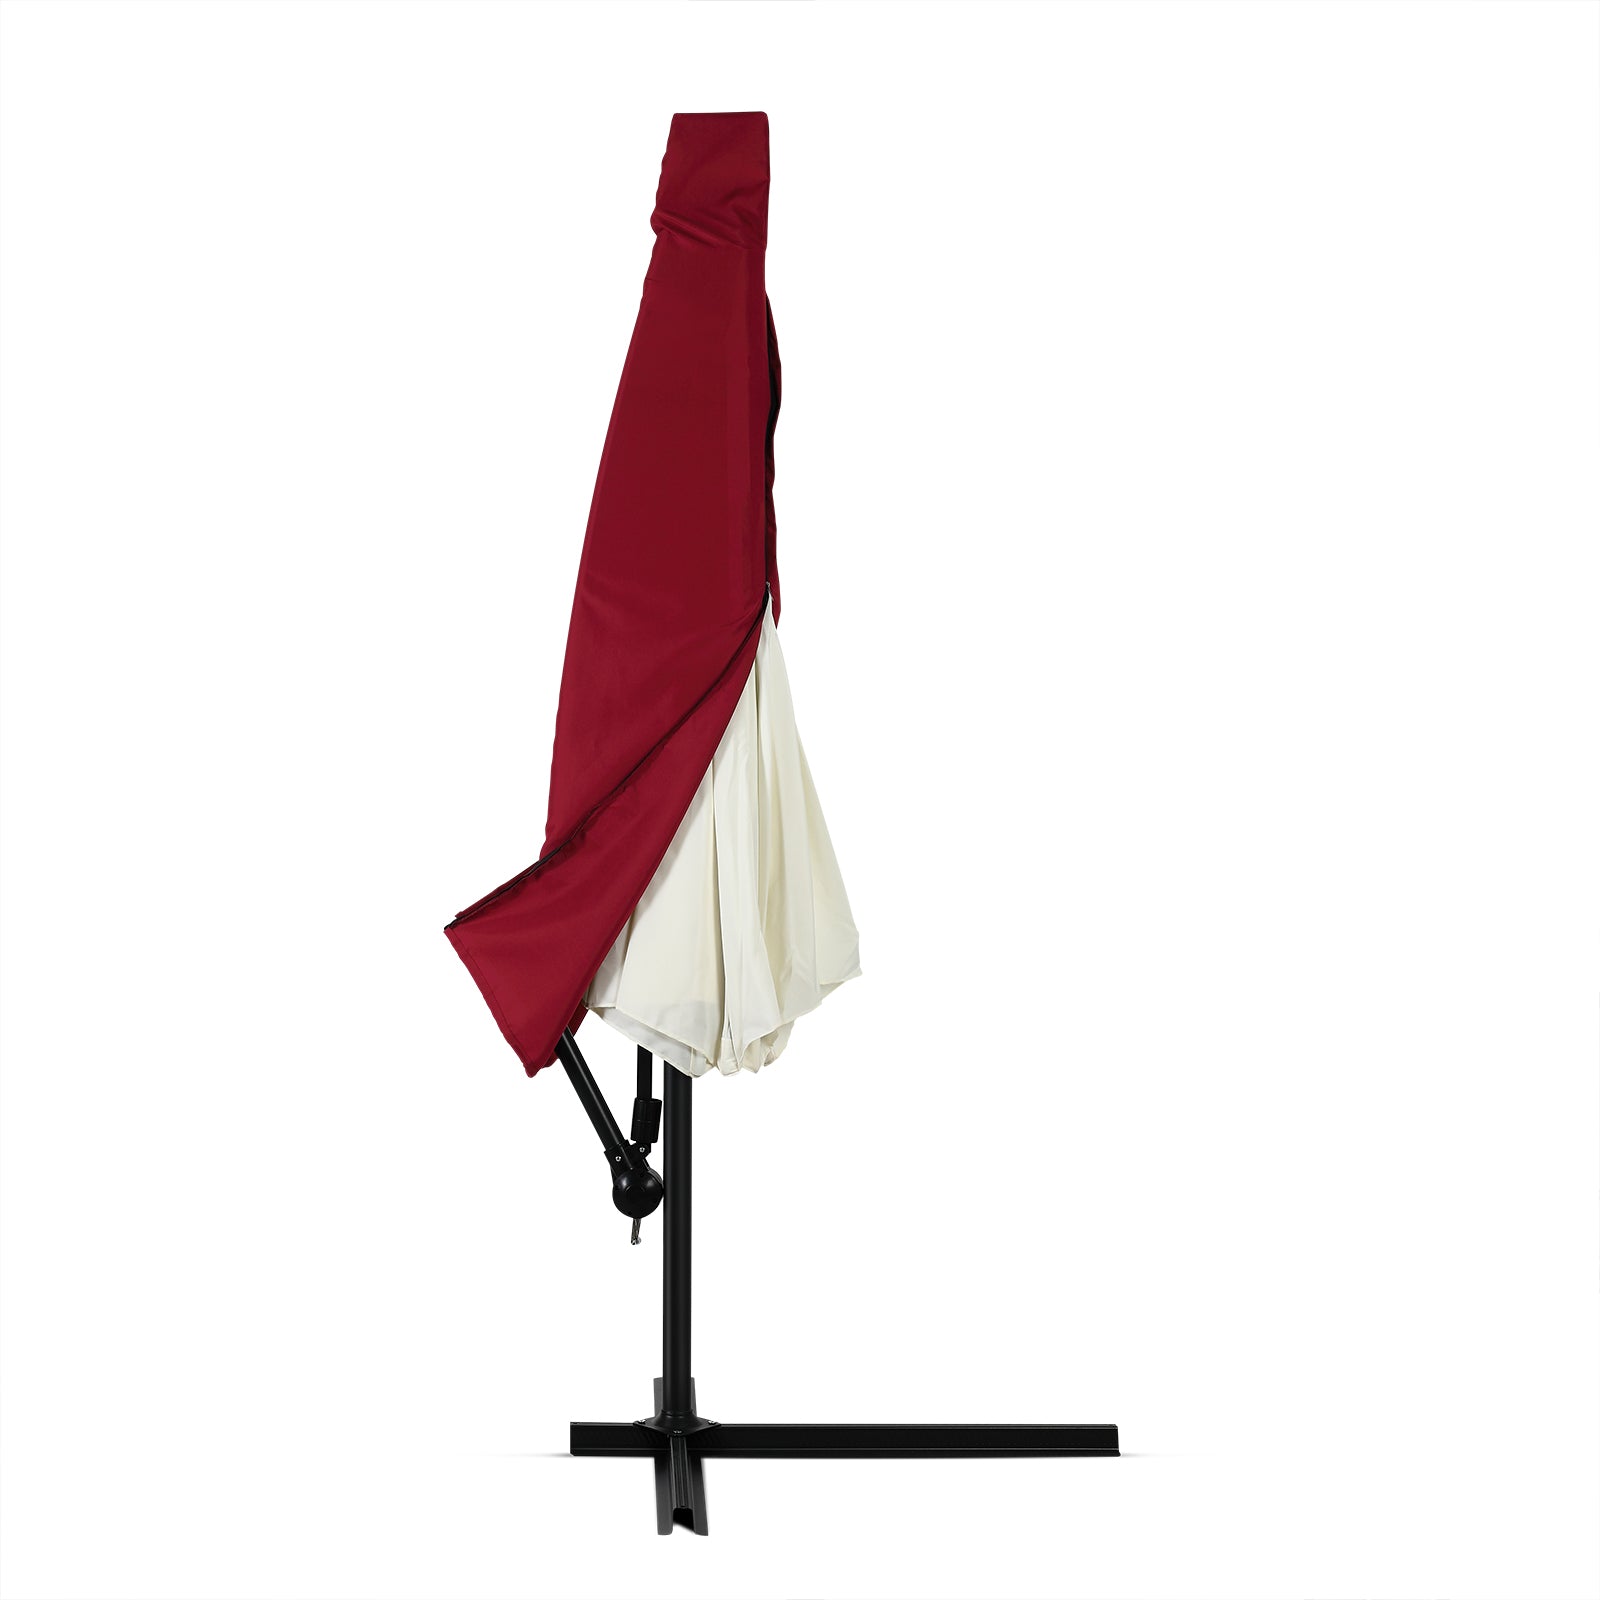 Billede af Overtræk til parasol, 3m, rød